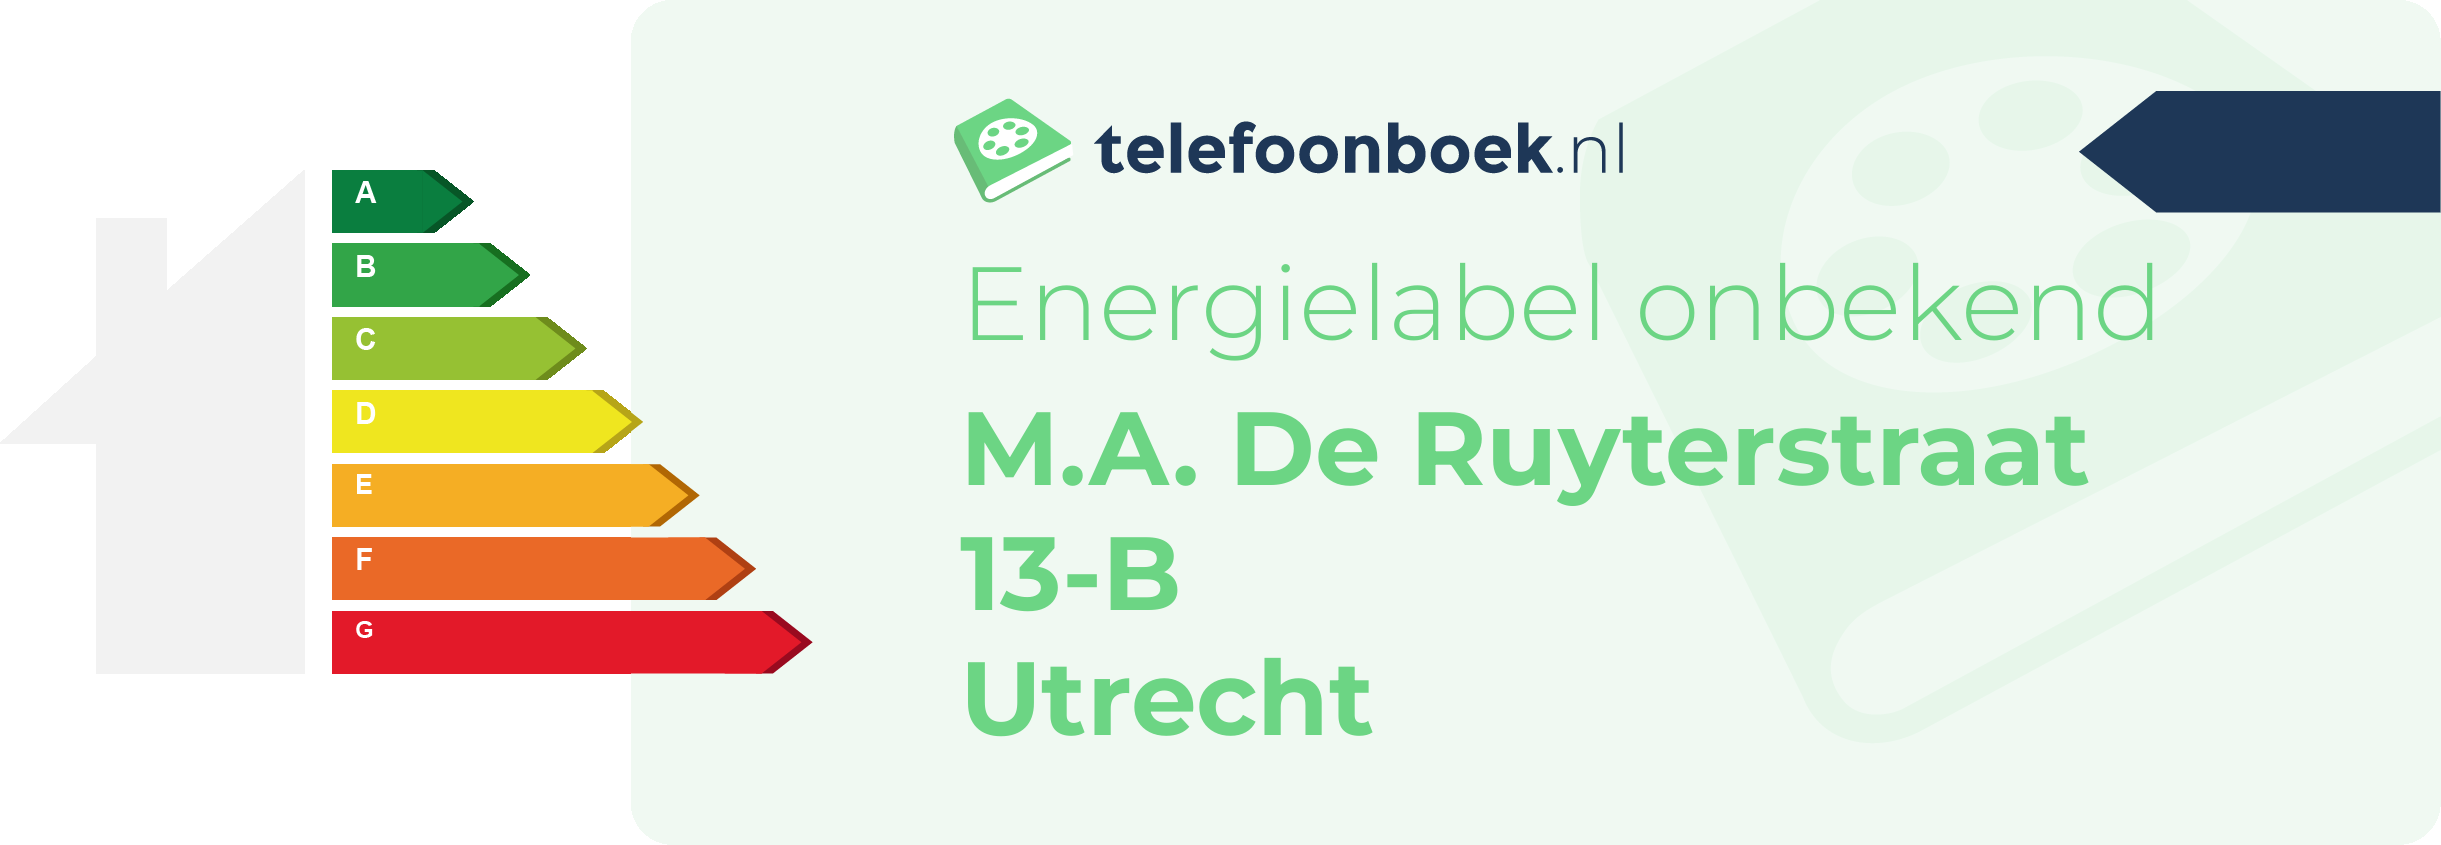 Energielabel M.A. De Ruyterstraat 13-B Utrecht